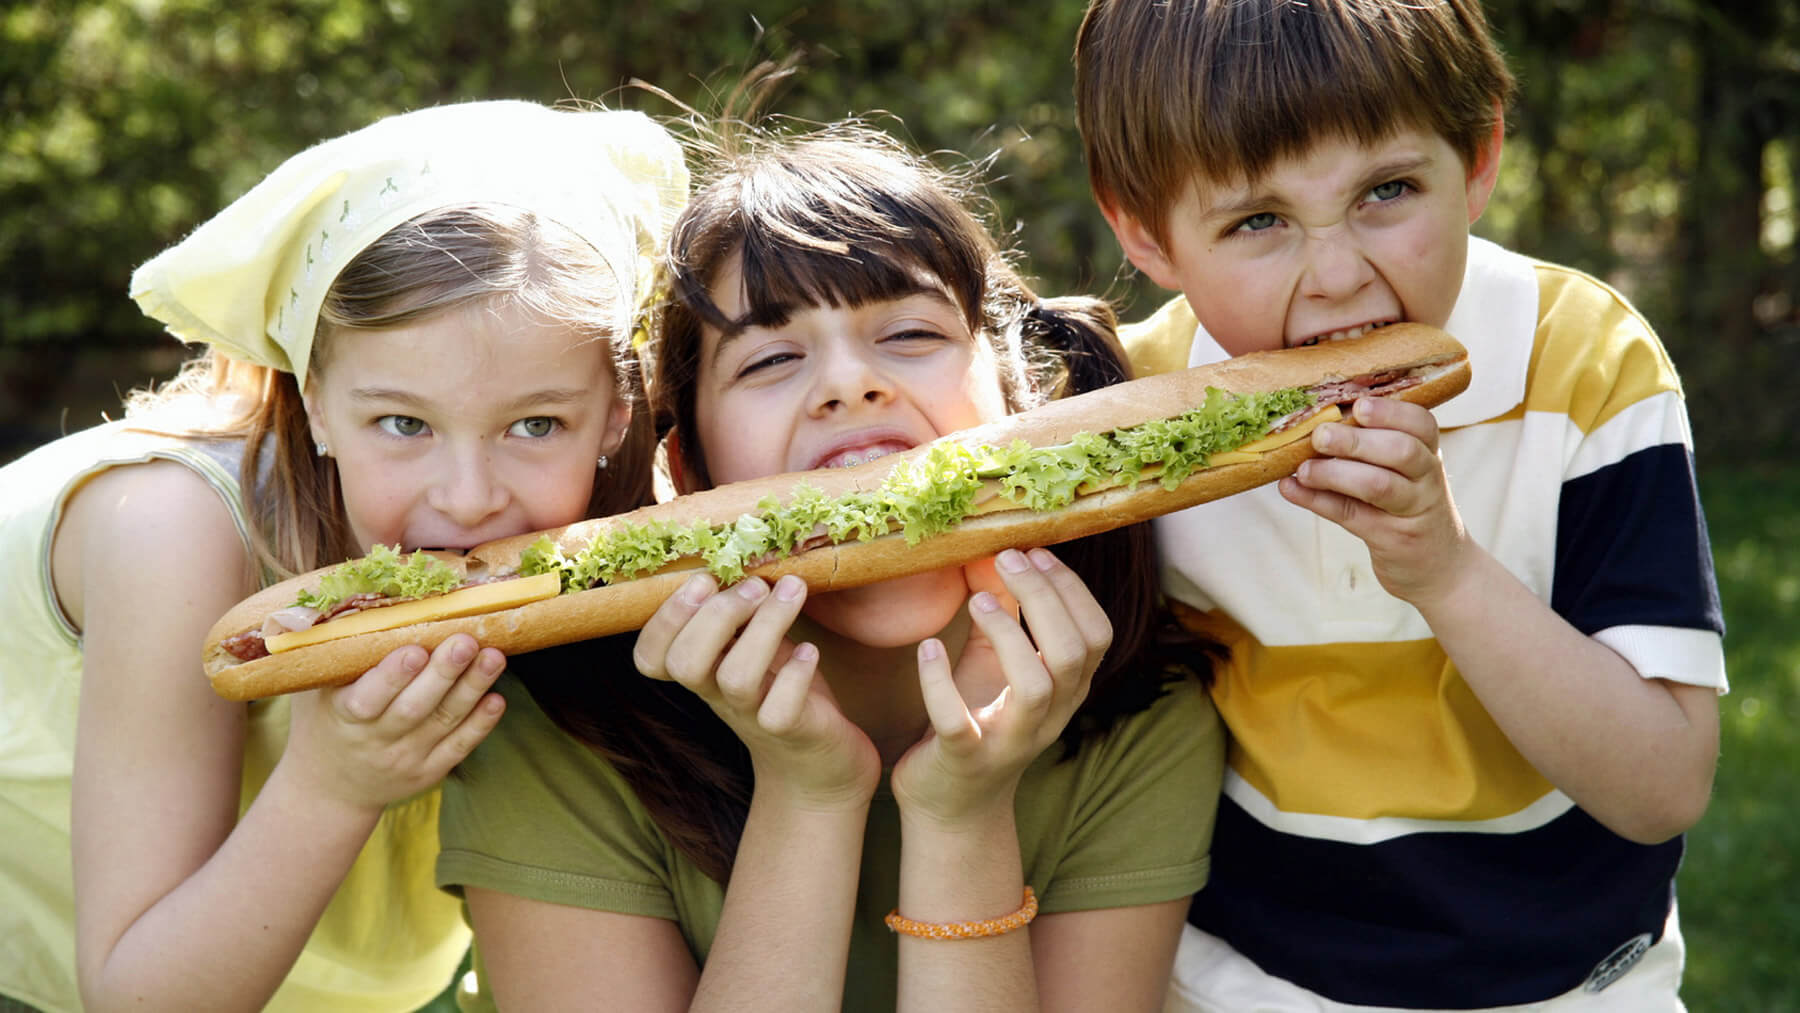 Three children sharing a sandwich